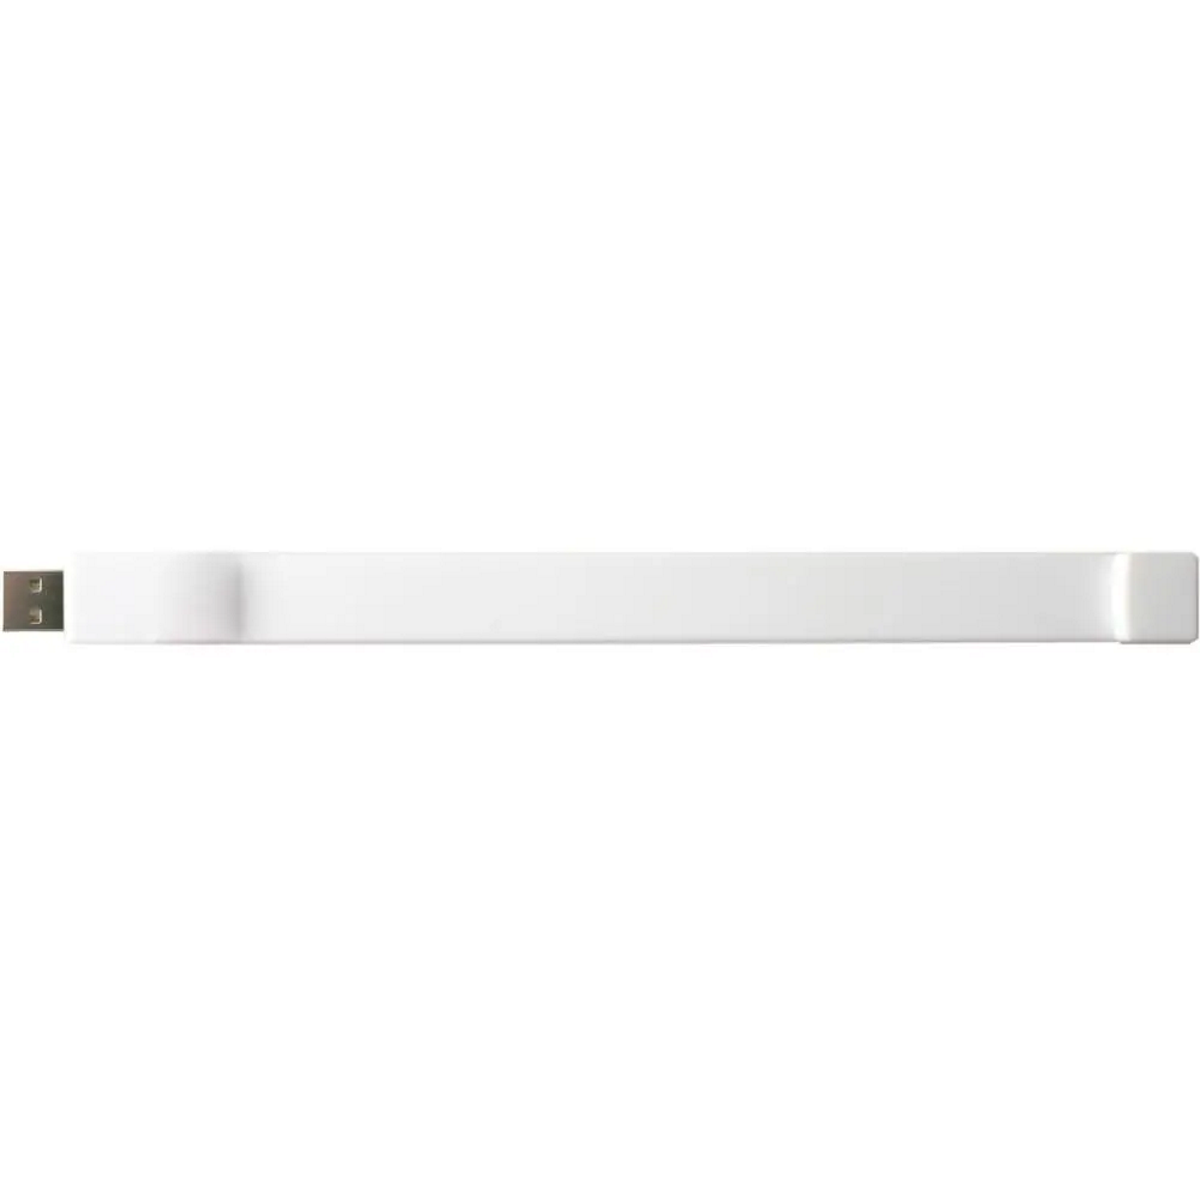 USB GERMANY Silicon-Armband USB-Stick (Weiß, 4 GB)